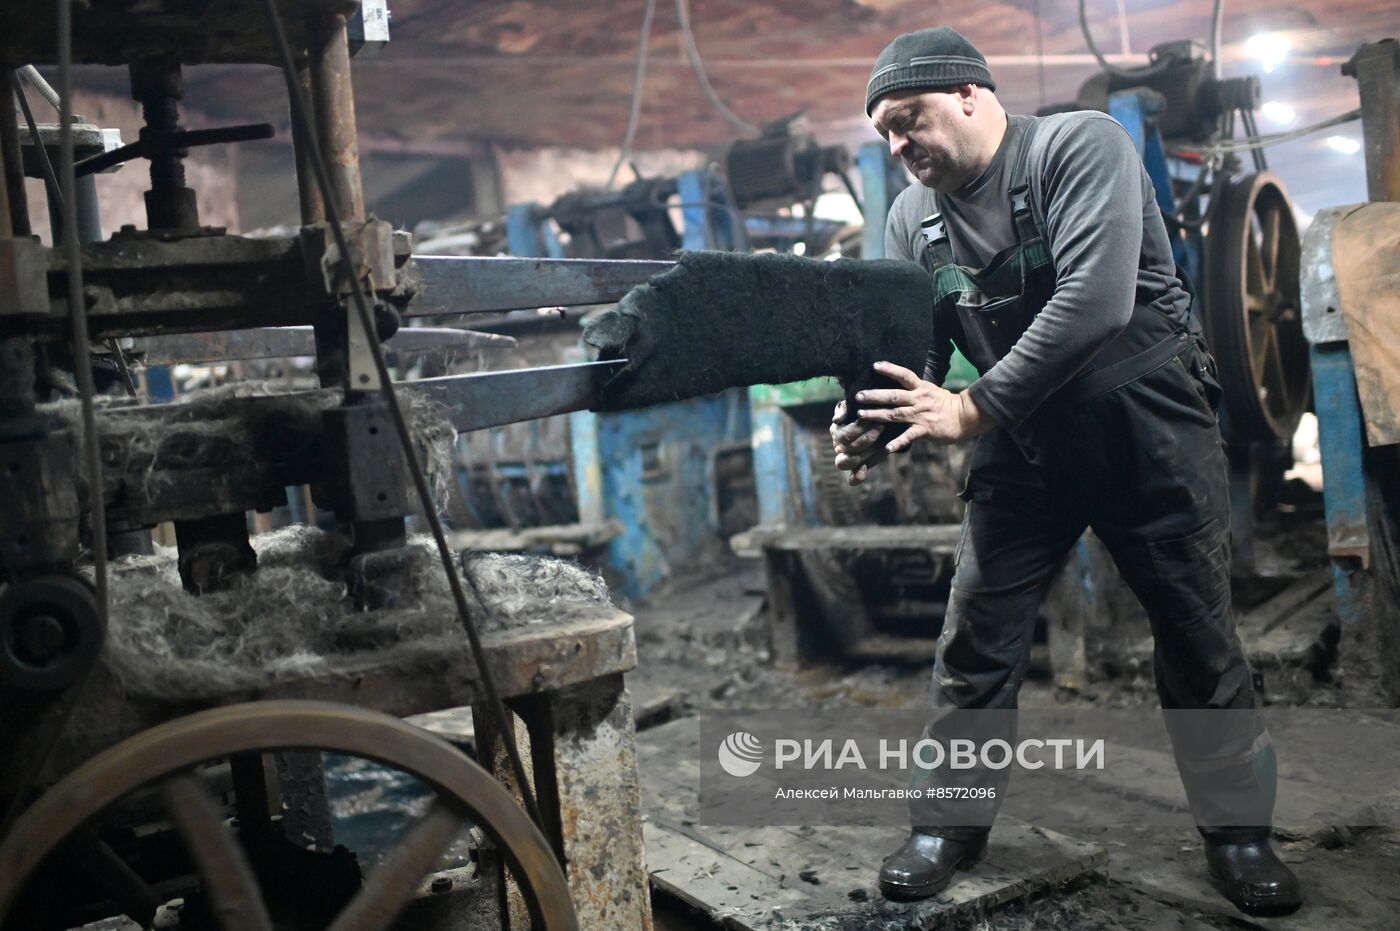 Производство валенок в Омске